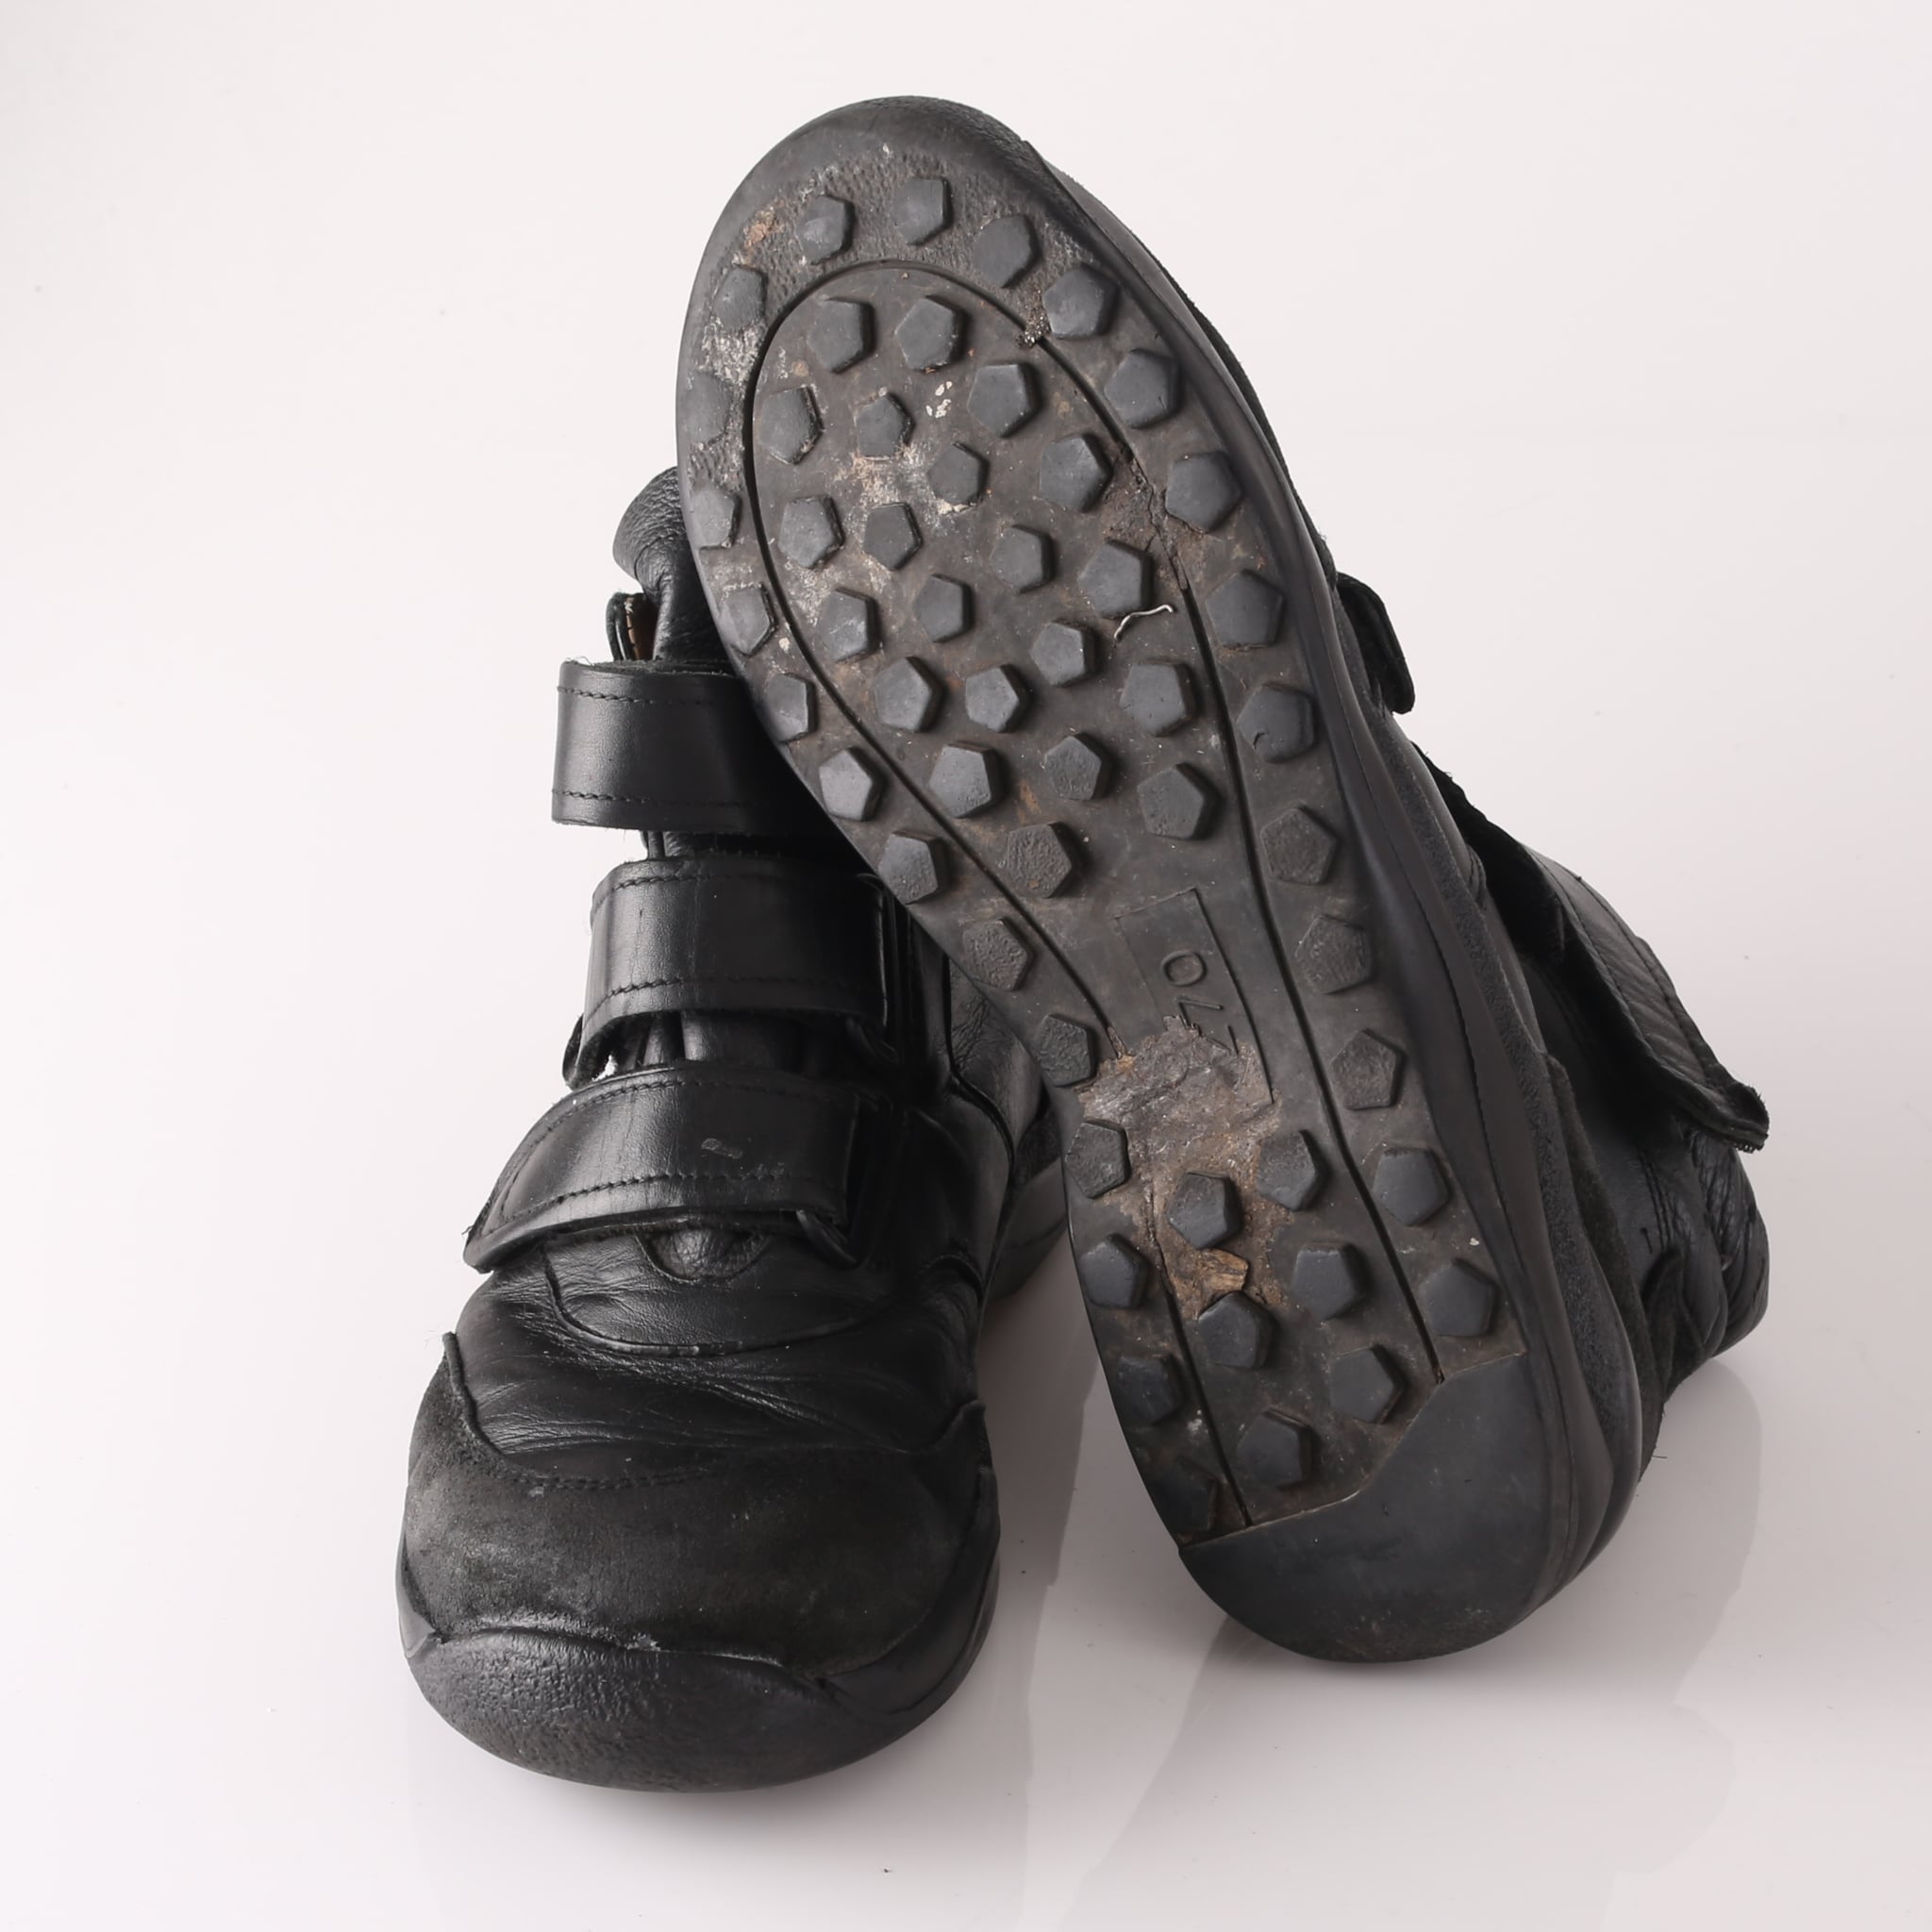 German Air Force Velcro Pilot Shoes 30.0